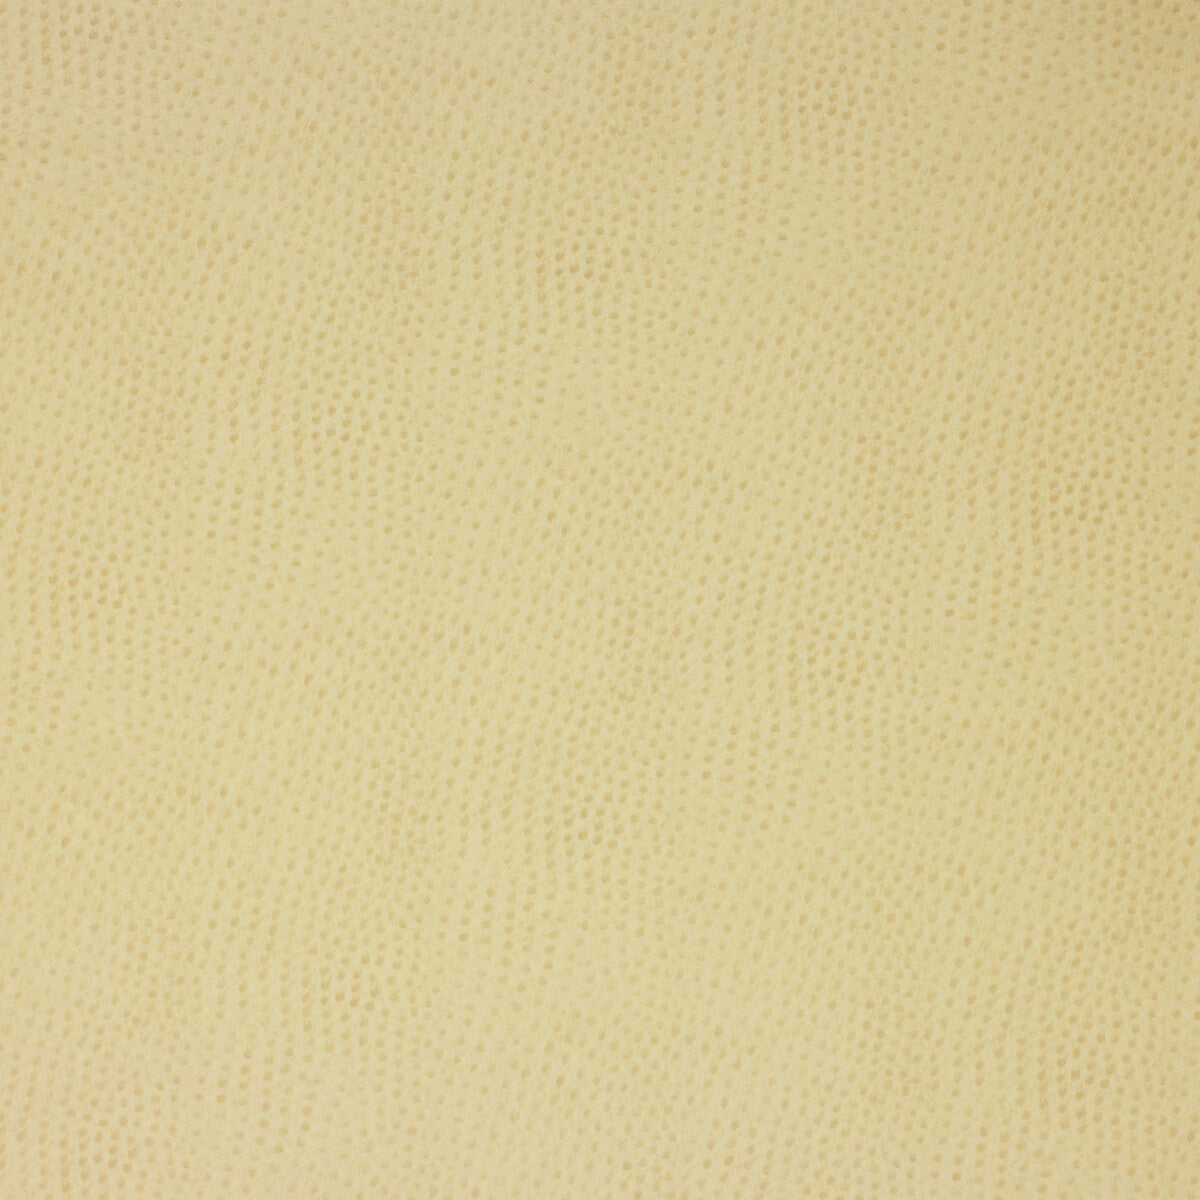 Kravet Design fabric in delaney-116 color - pattern DELANEY.116.0 - by Kravet Design